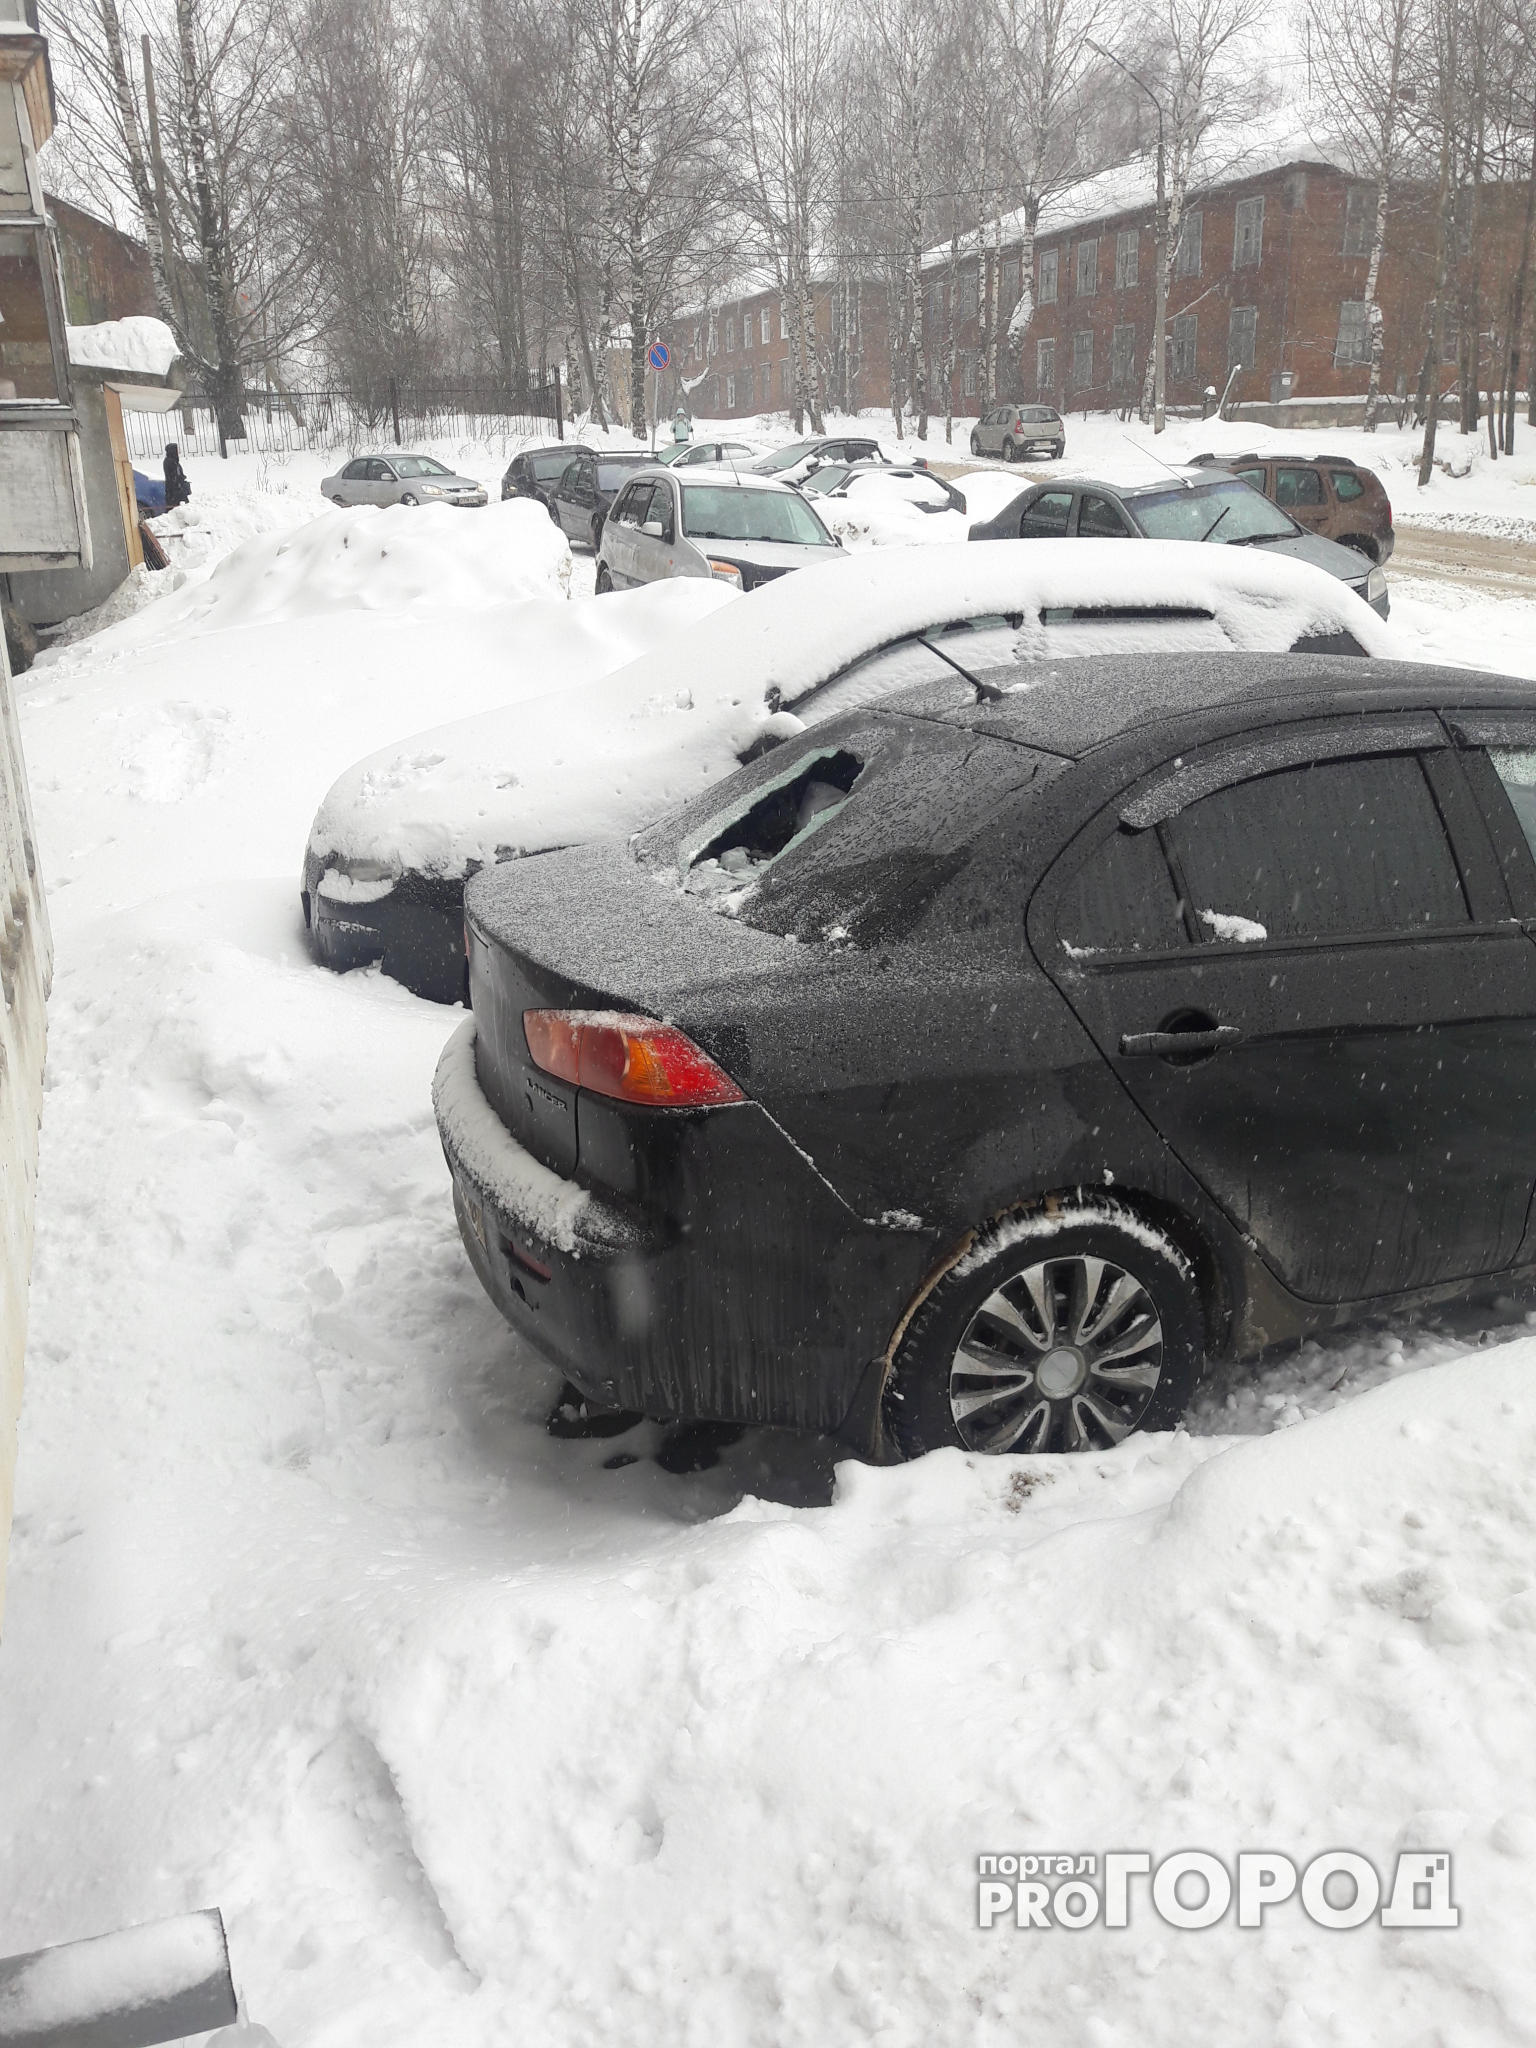 Ирония судьбы: очевидцы сообщили, что в Сыктывкаре снег упал на авто чиновника из управления ЖКХ